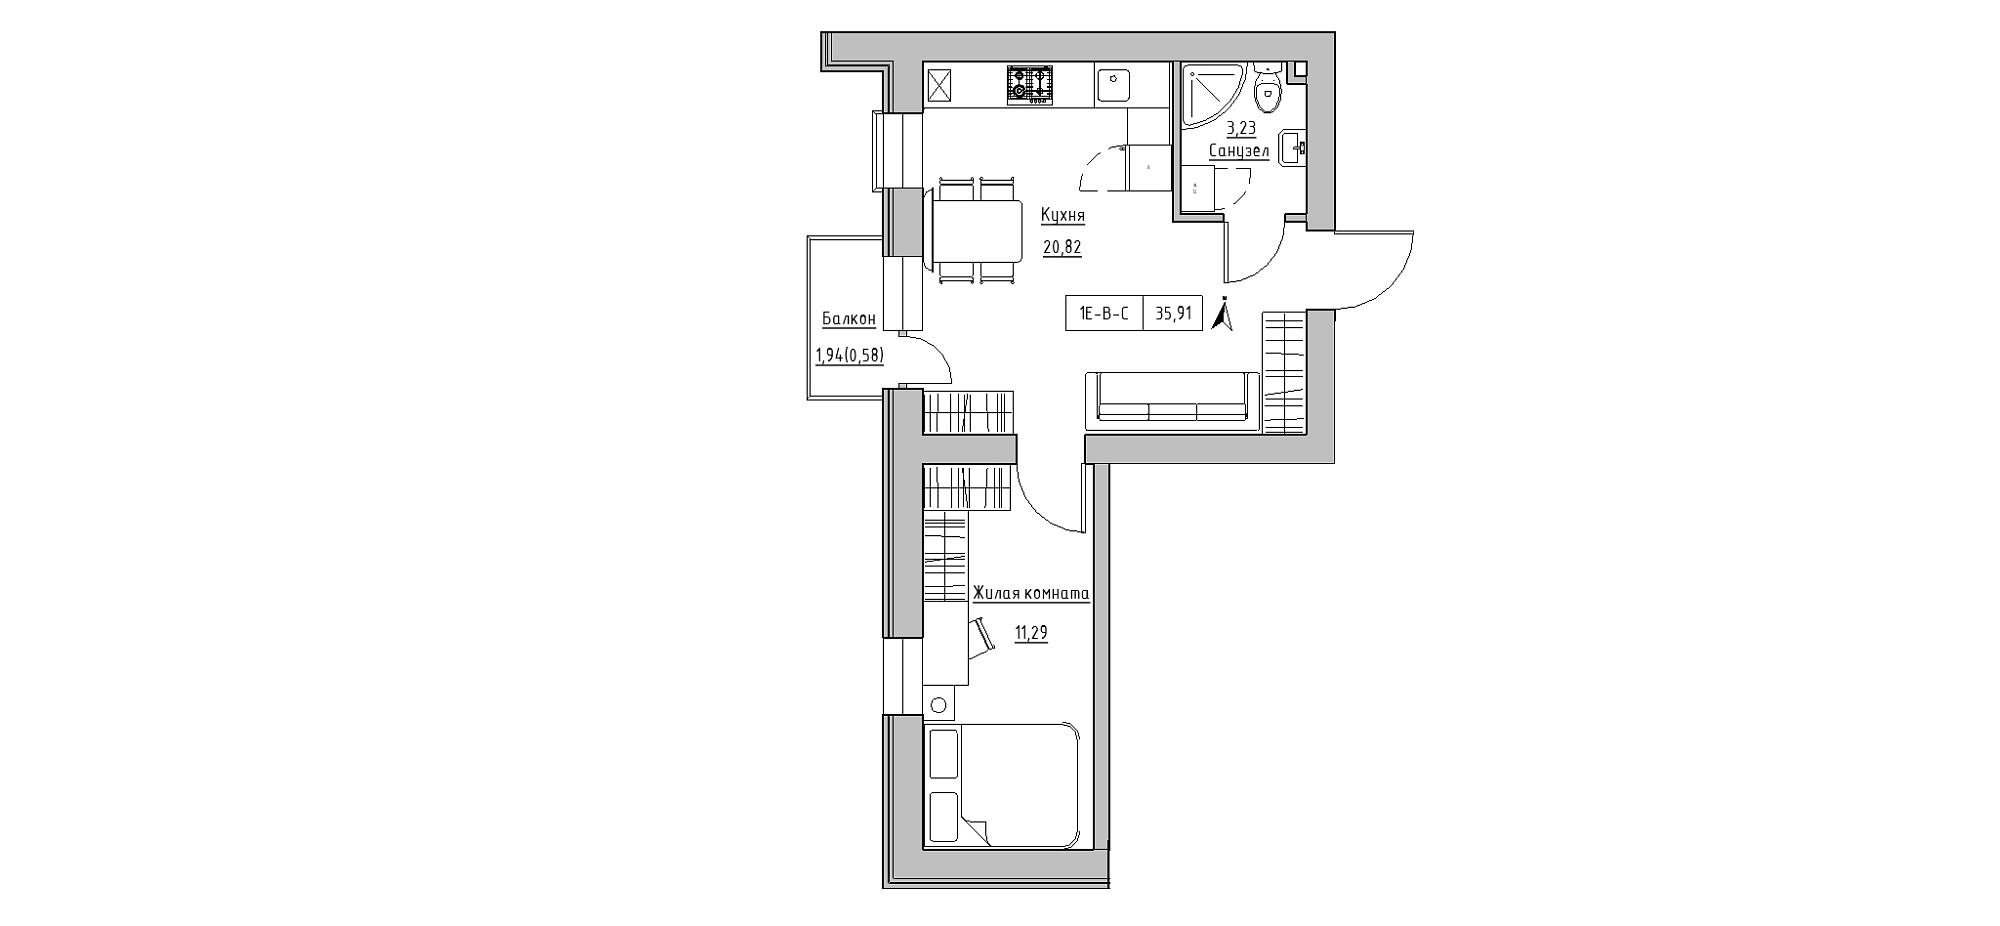 Планування 1-к квартира площею 35.91м2, KS-020-04/0009.